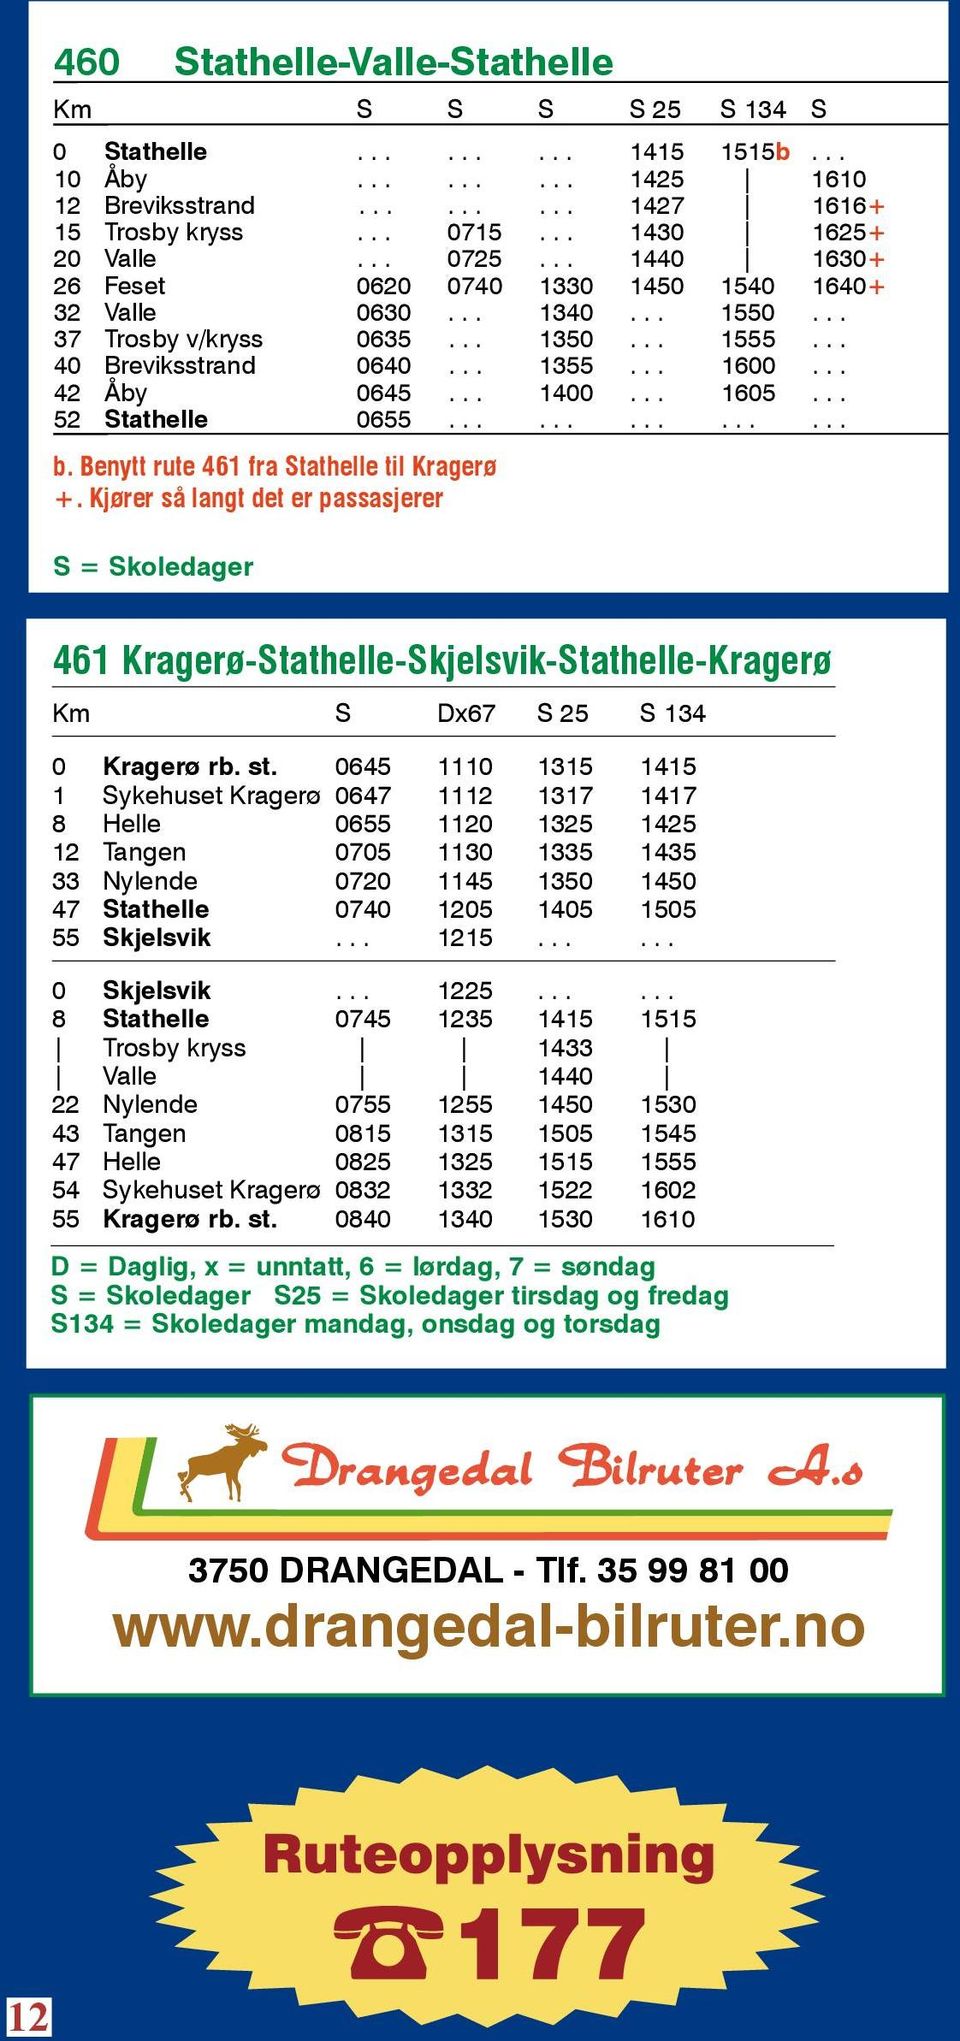 .. 1605... 52 Stathelle 0655............... b. Benytt rute 461 fra Stathelle til Kragerø +.